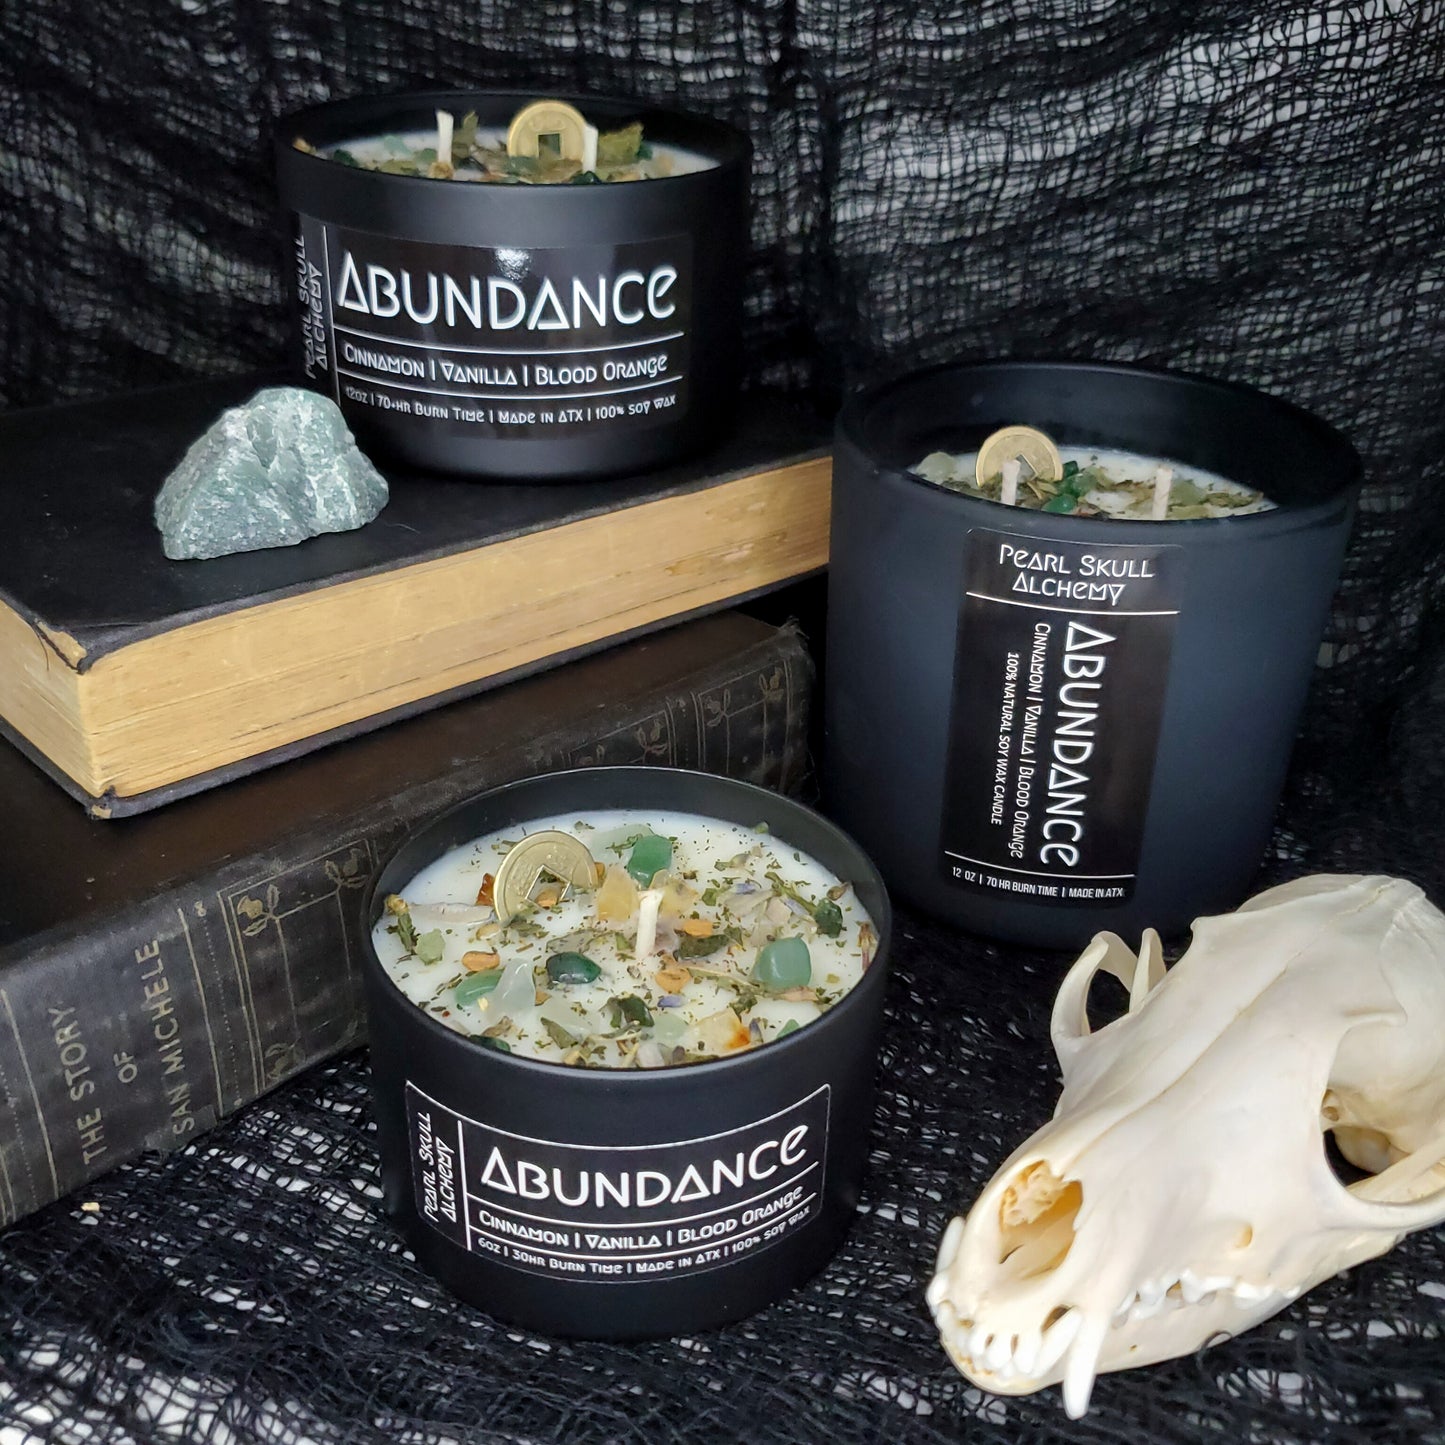 Abundance Candle